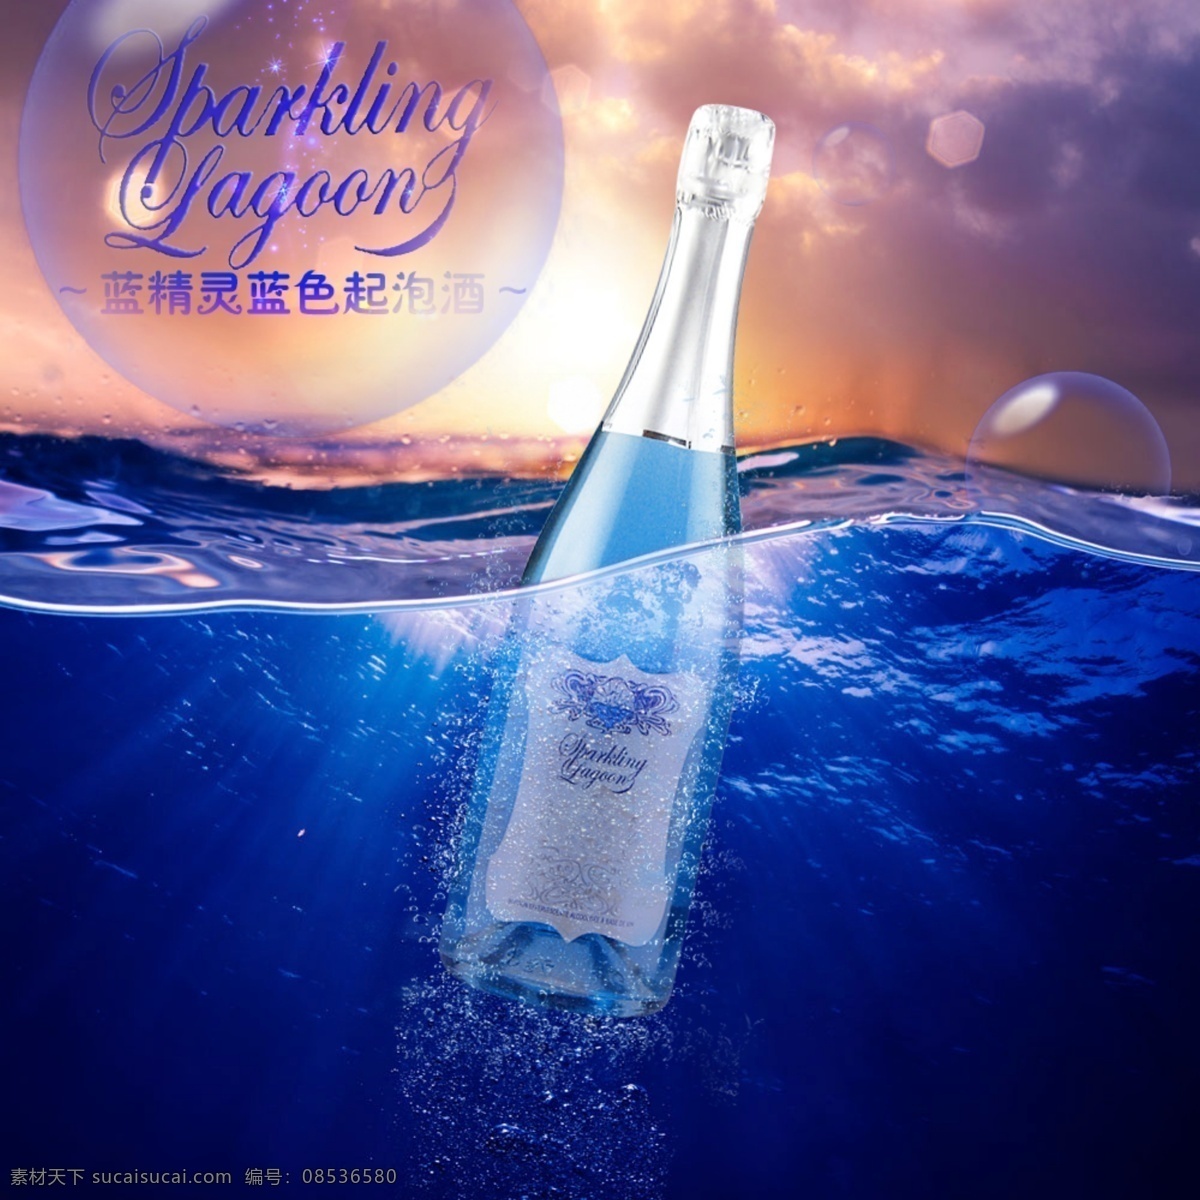 蓝精灵 起泡酒广告图 起泡酒 海洋 漂洋过海 酒类广告 分层